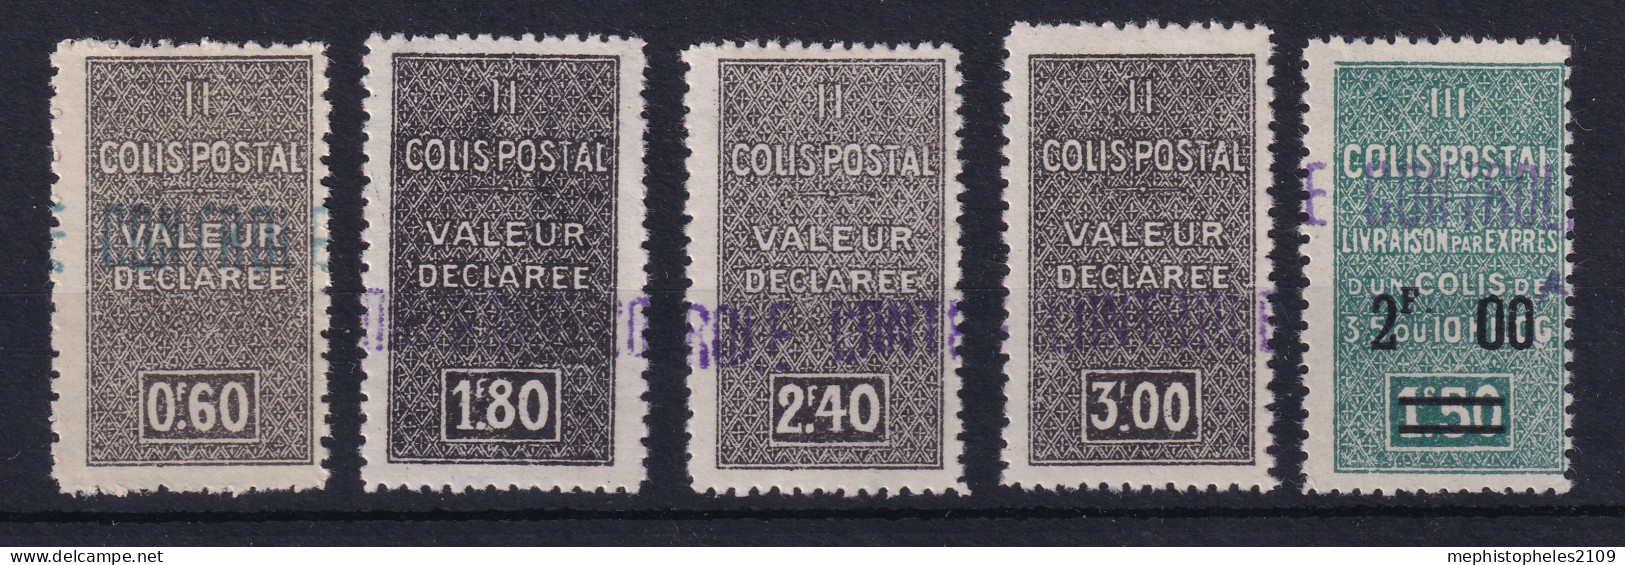 ALGÉRIE 1939 - MLH - YT 55, 56, 57, 58, 59 - COLIS POSTAUX - Colis Postaux